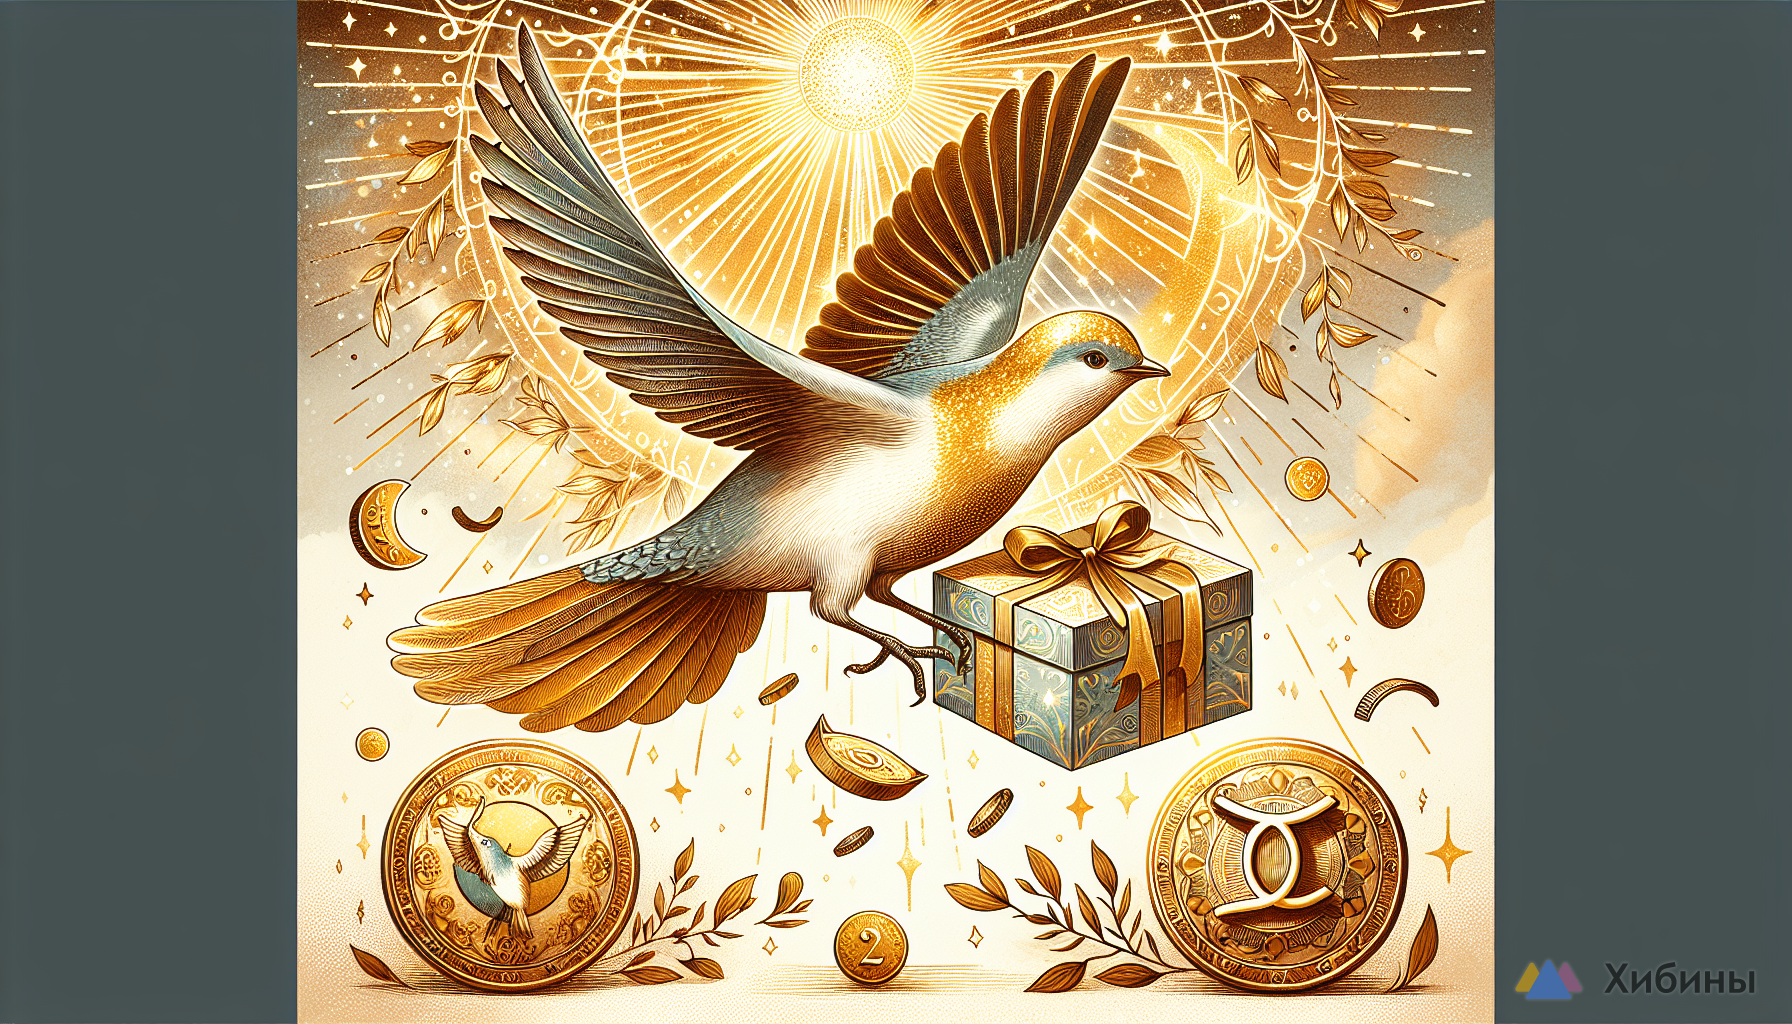 Птица счастья распушила золотой хвост: Готовит подарок для 2 знаков Зодиака в конце июня — деньги и абсолютное счастье